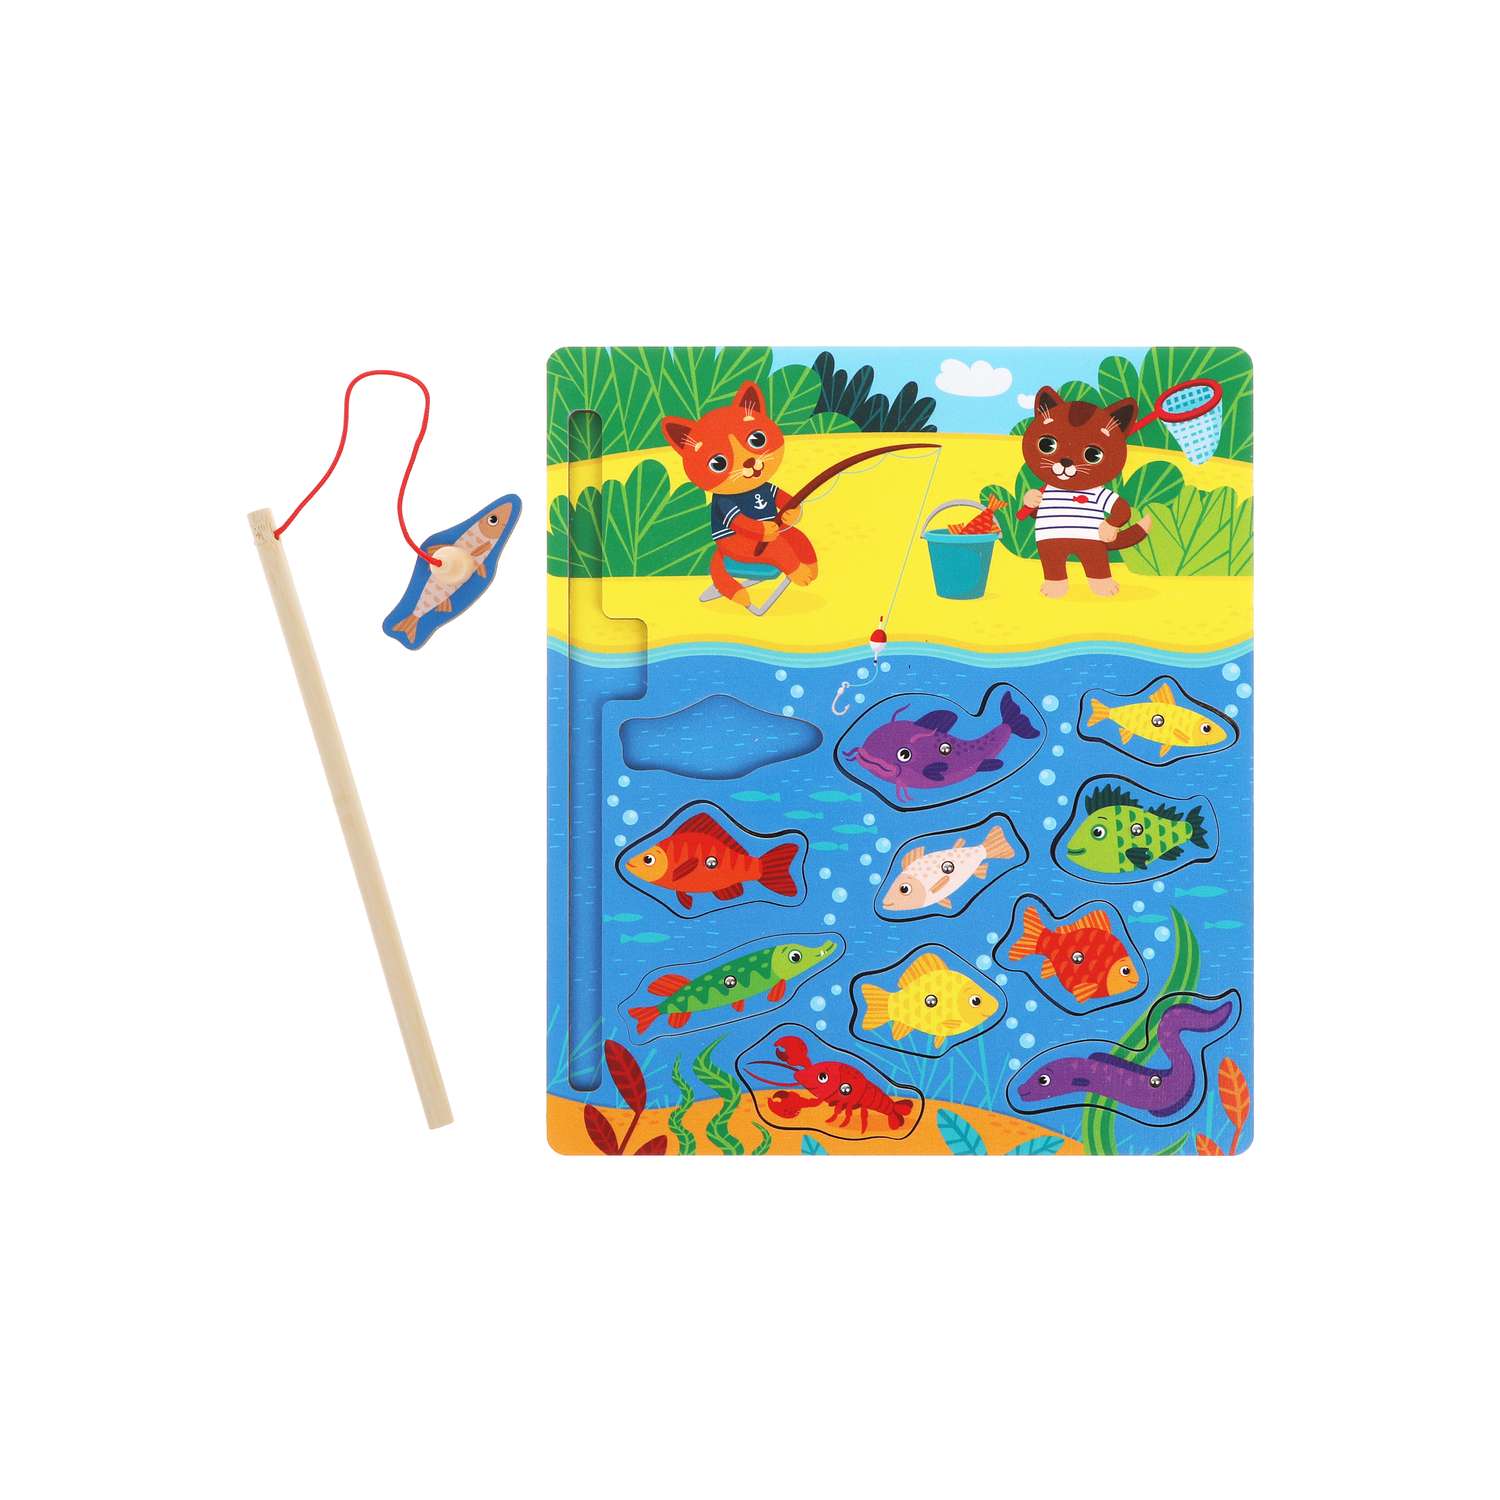 Развивающая игра Mapacha для детей деревянная рыбалка вкладыши Котики - фото 9